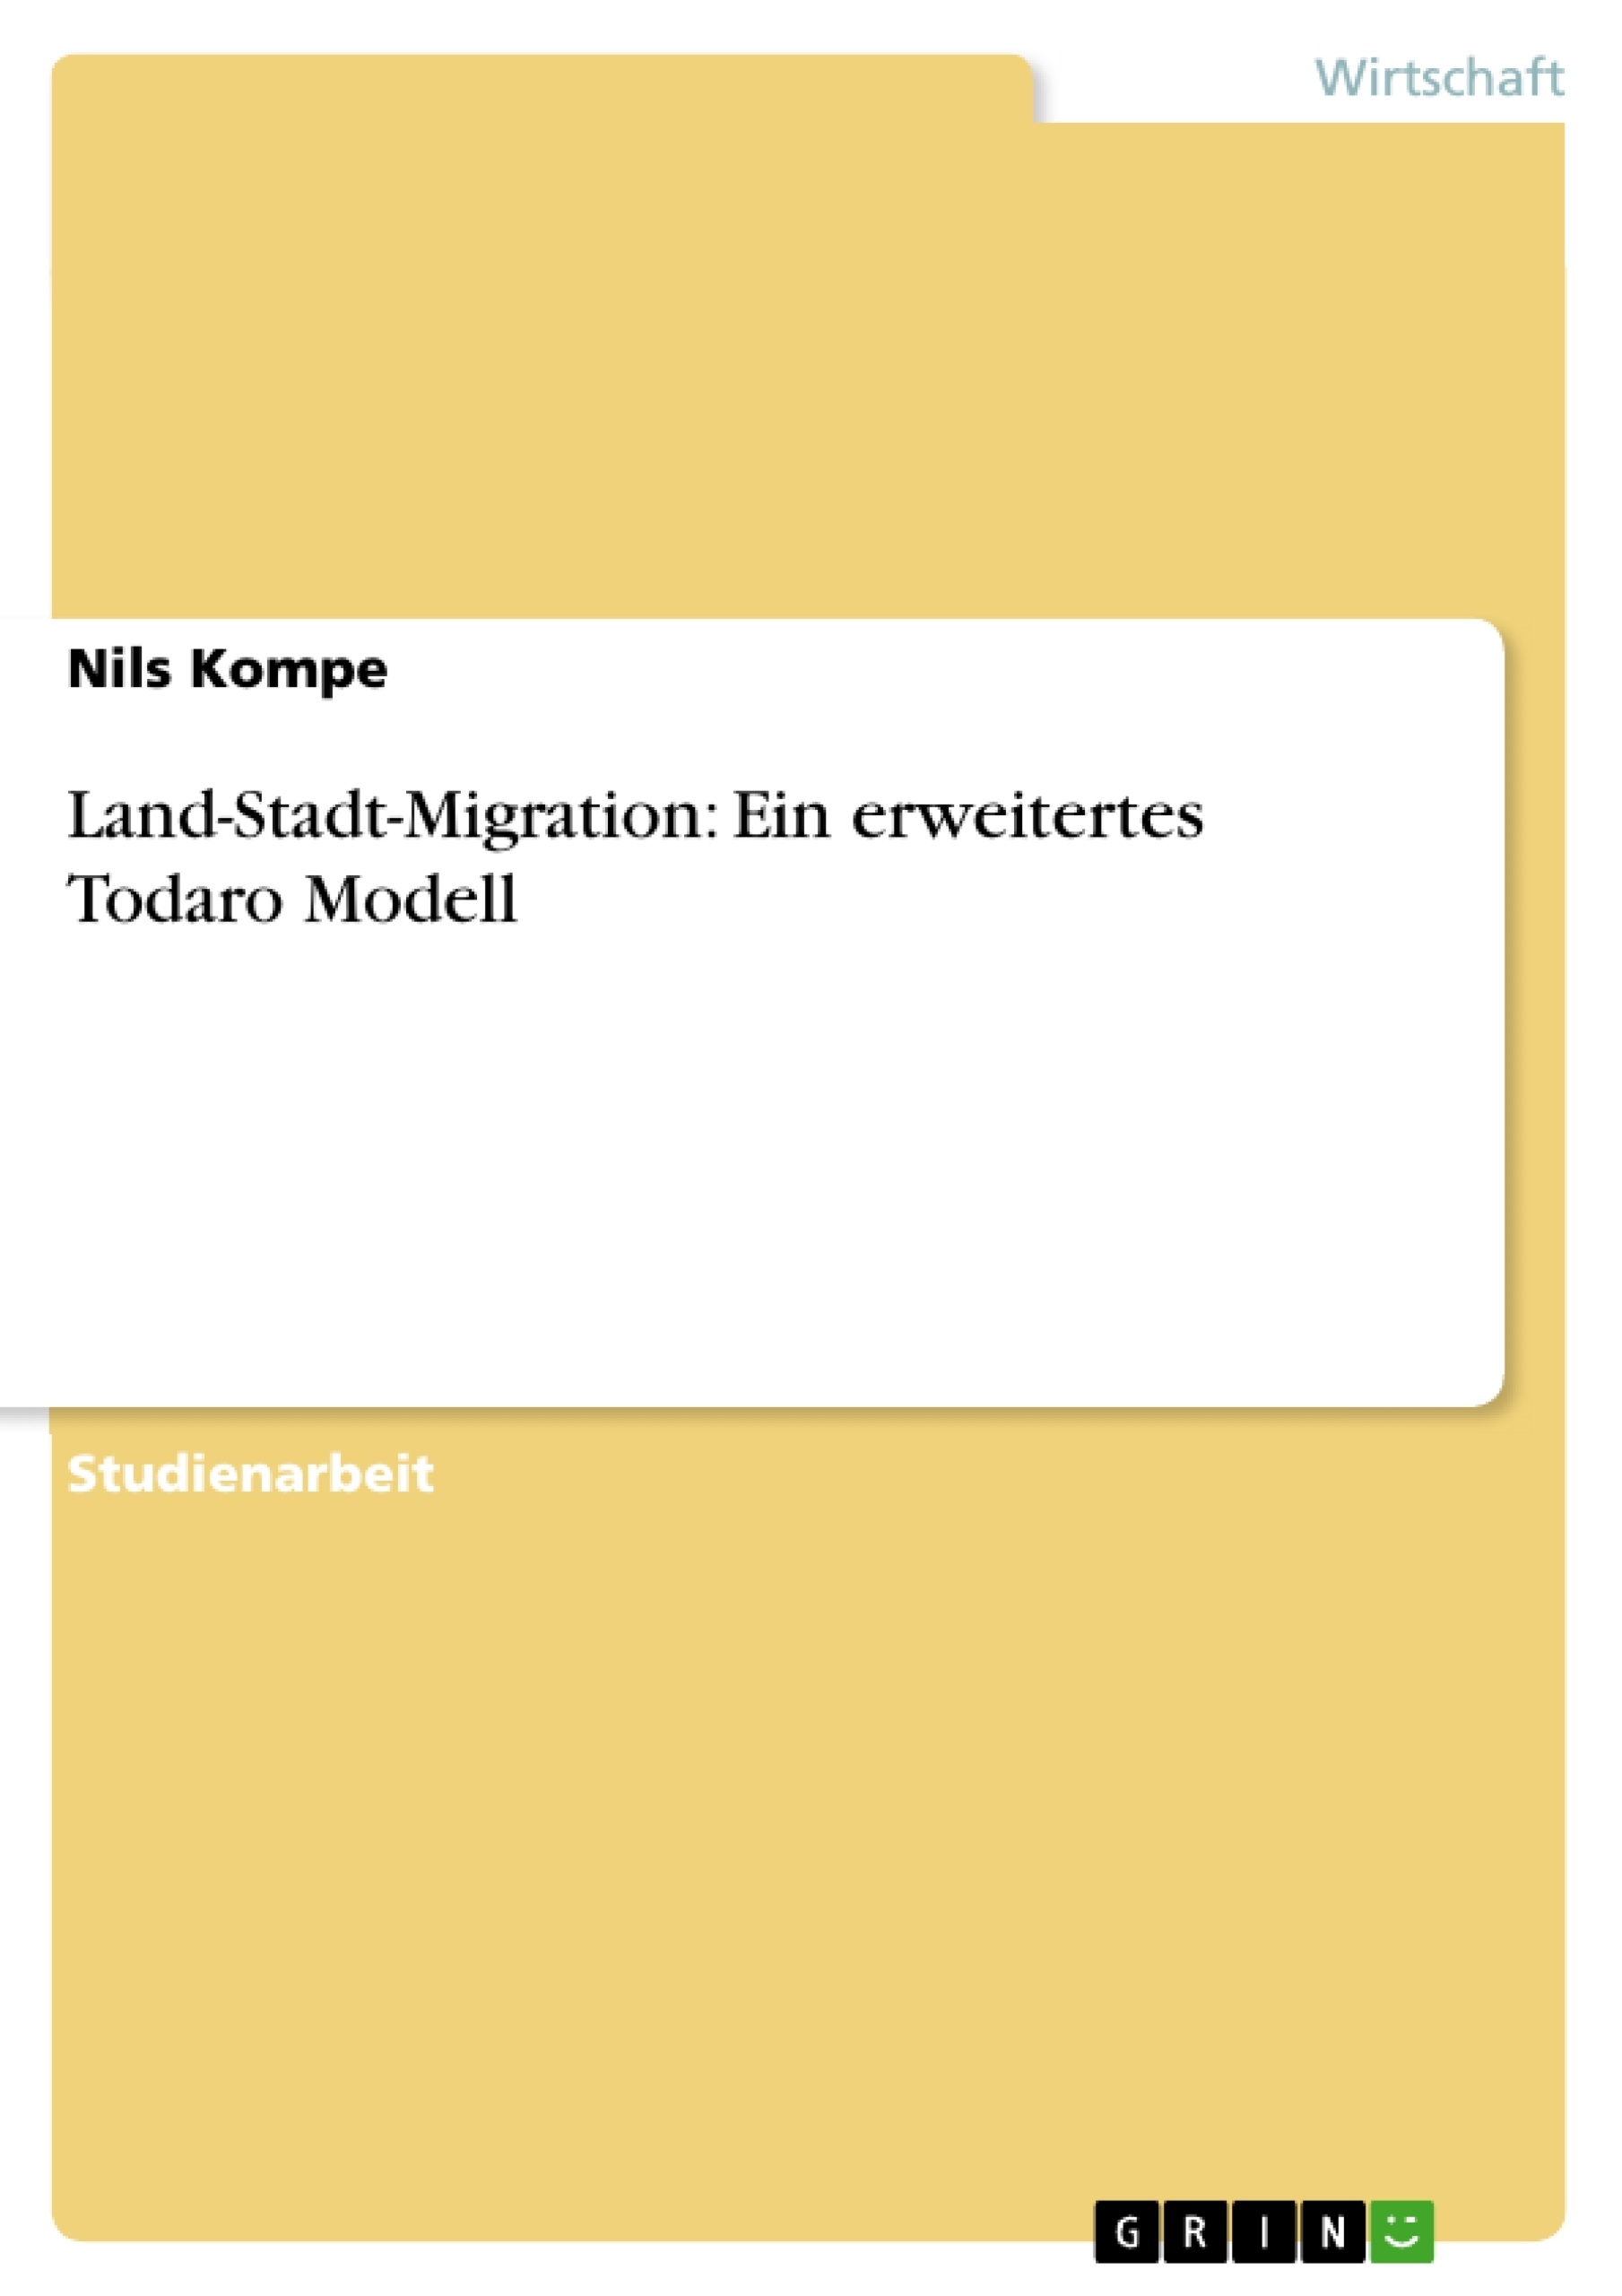 Título: Land-Stadt-Migration: Ein erweitertes Todaro Modell